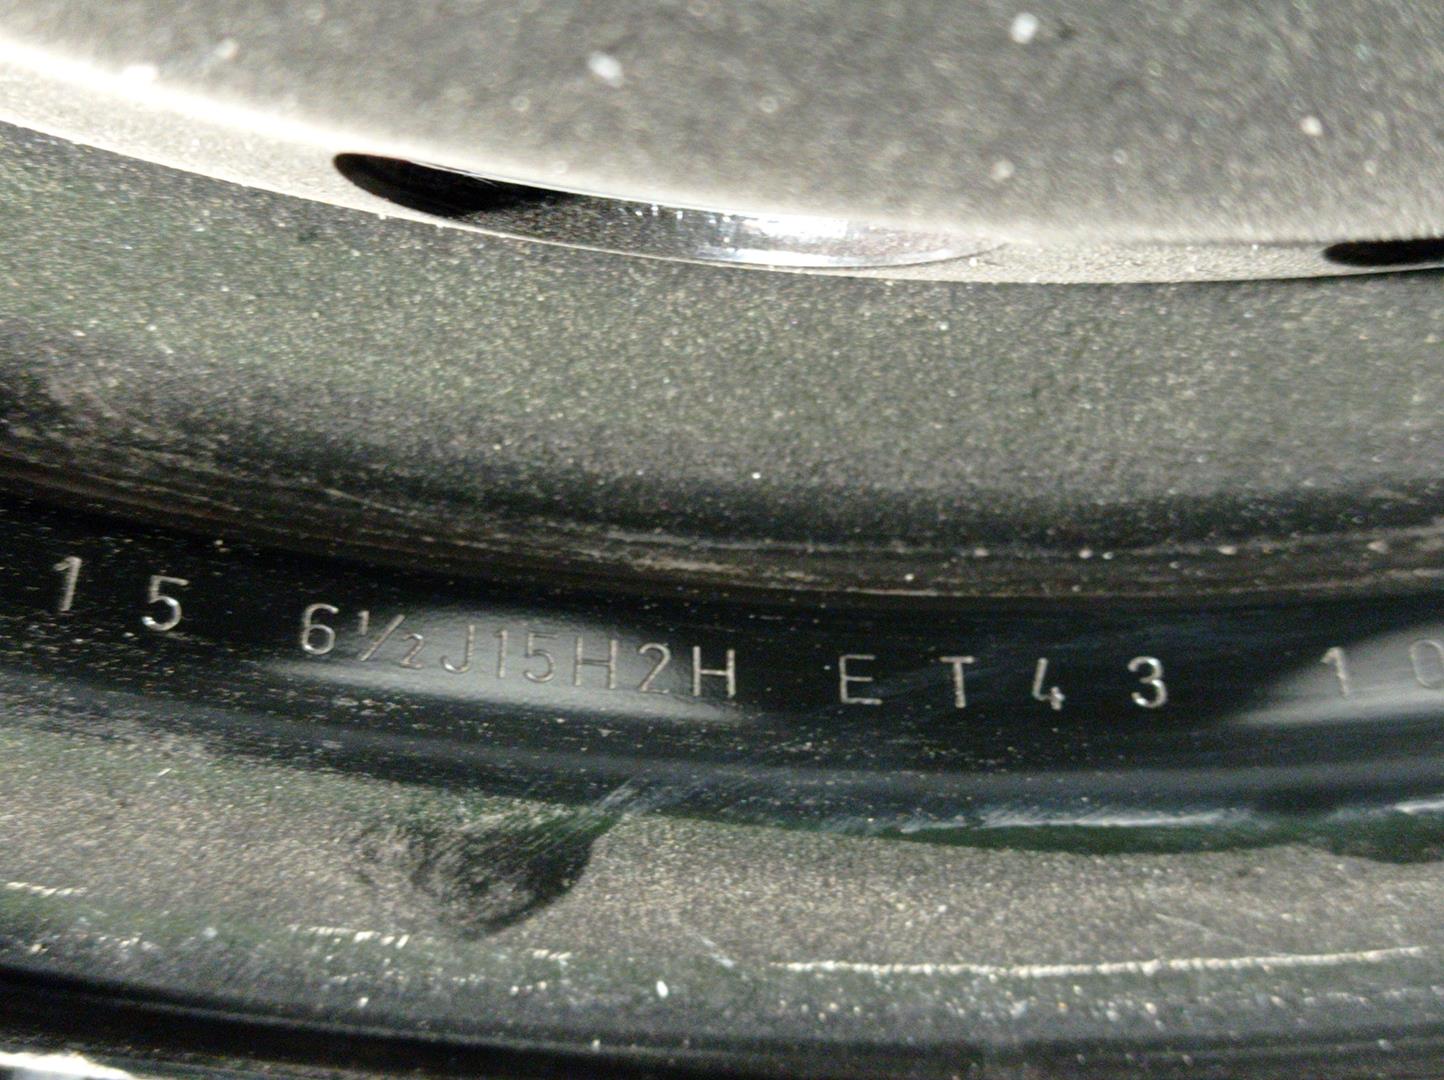 RENAULT Megane 3 generation (2008-2020) Wheel 403000026R, R1561/2J15H2HET43, HIERRO 24535521